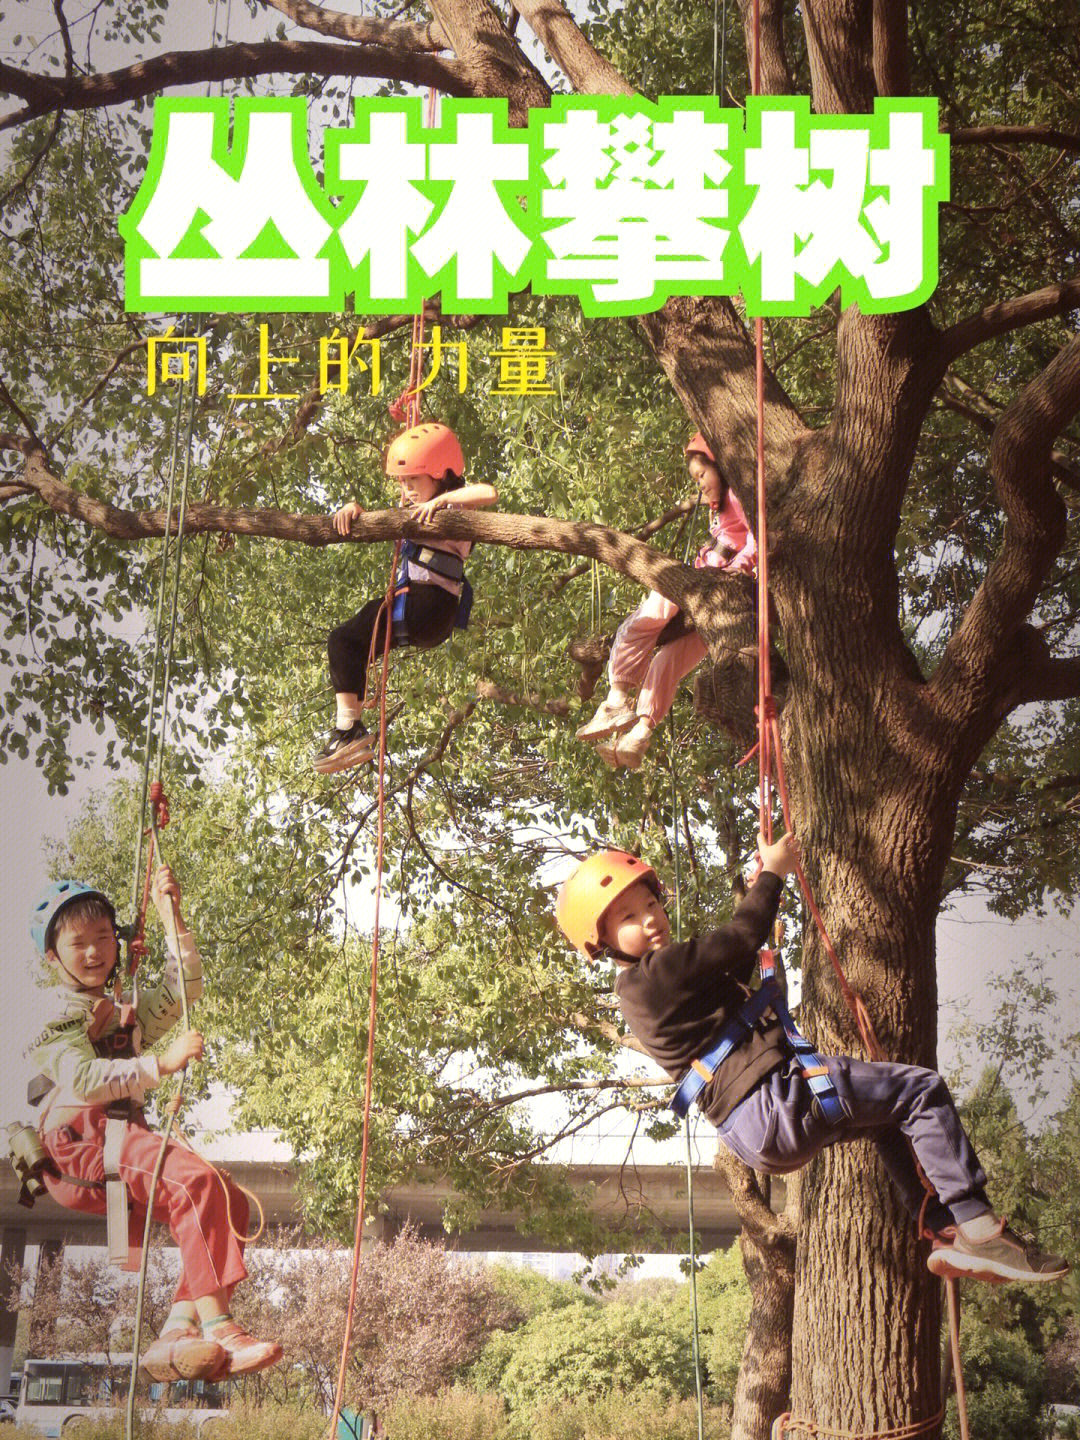 攀树运动是利用绳索系统进行的攀树活动,它与徒手爬树摘果子,掏鸟窝等